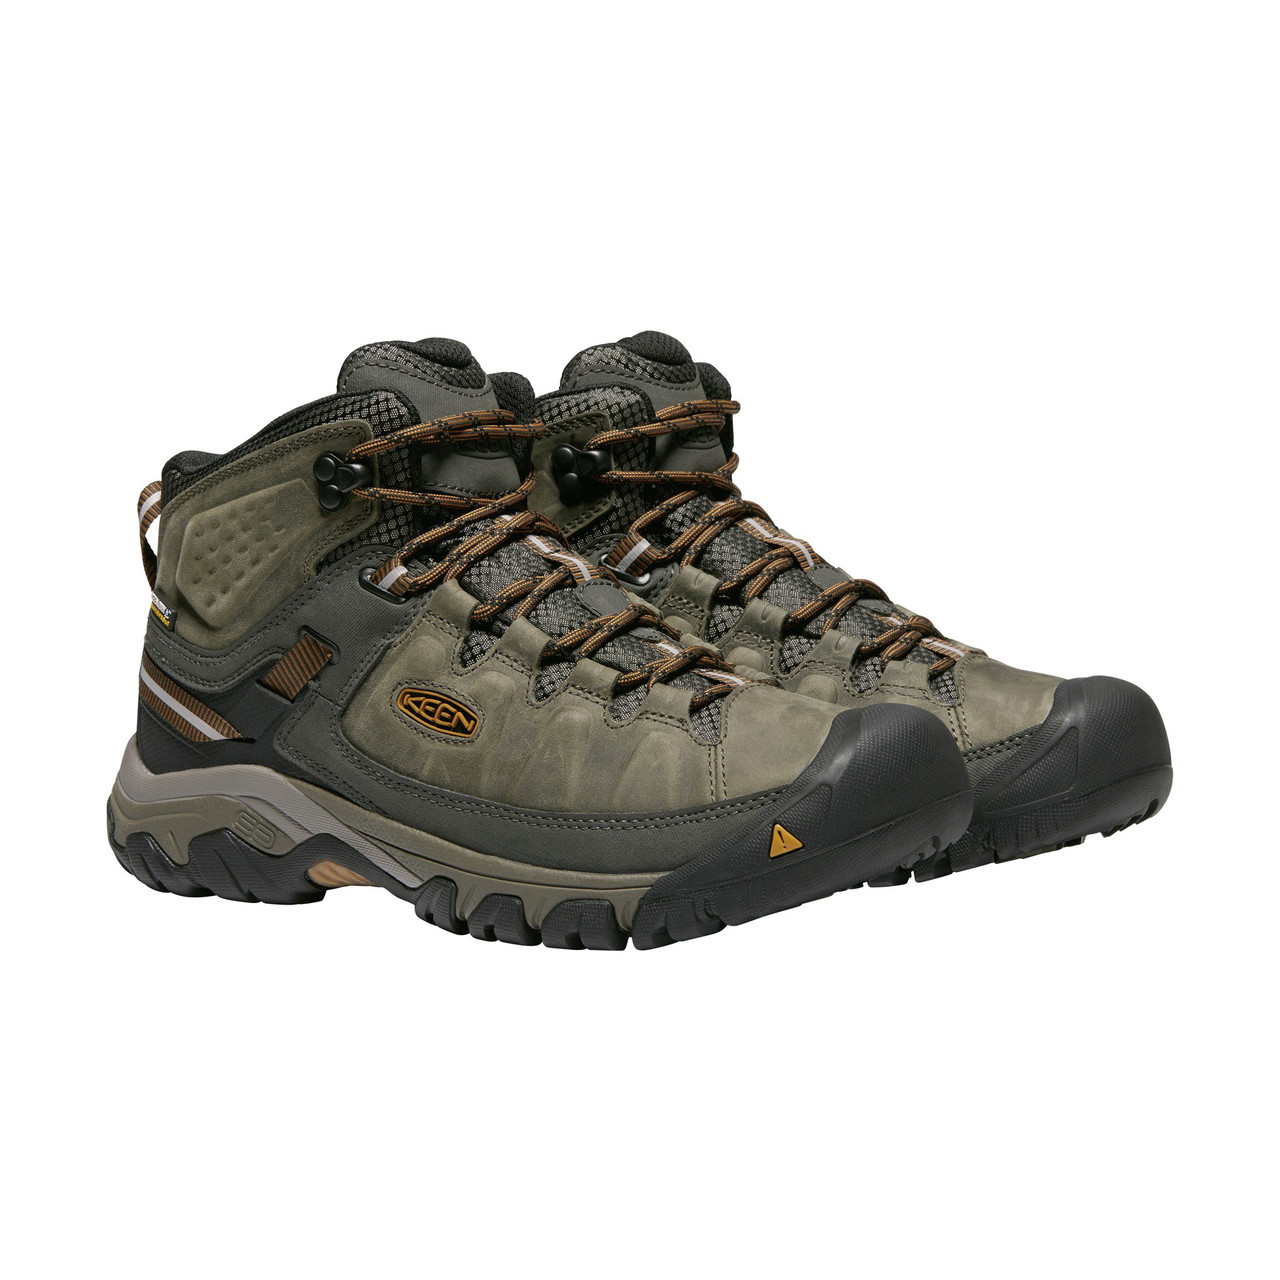 KEEN Targhee III #1017787 Men's Mid Waterproof Hiking Boot